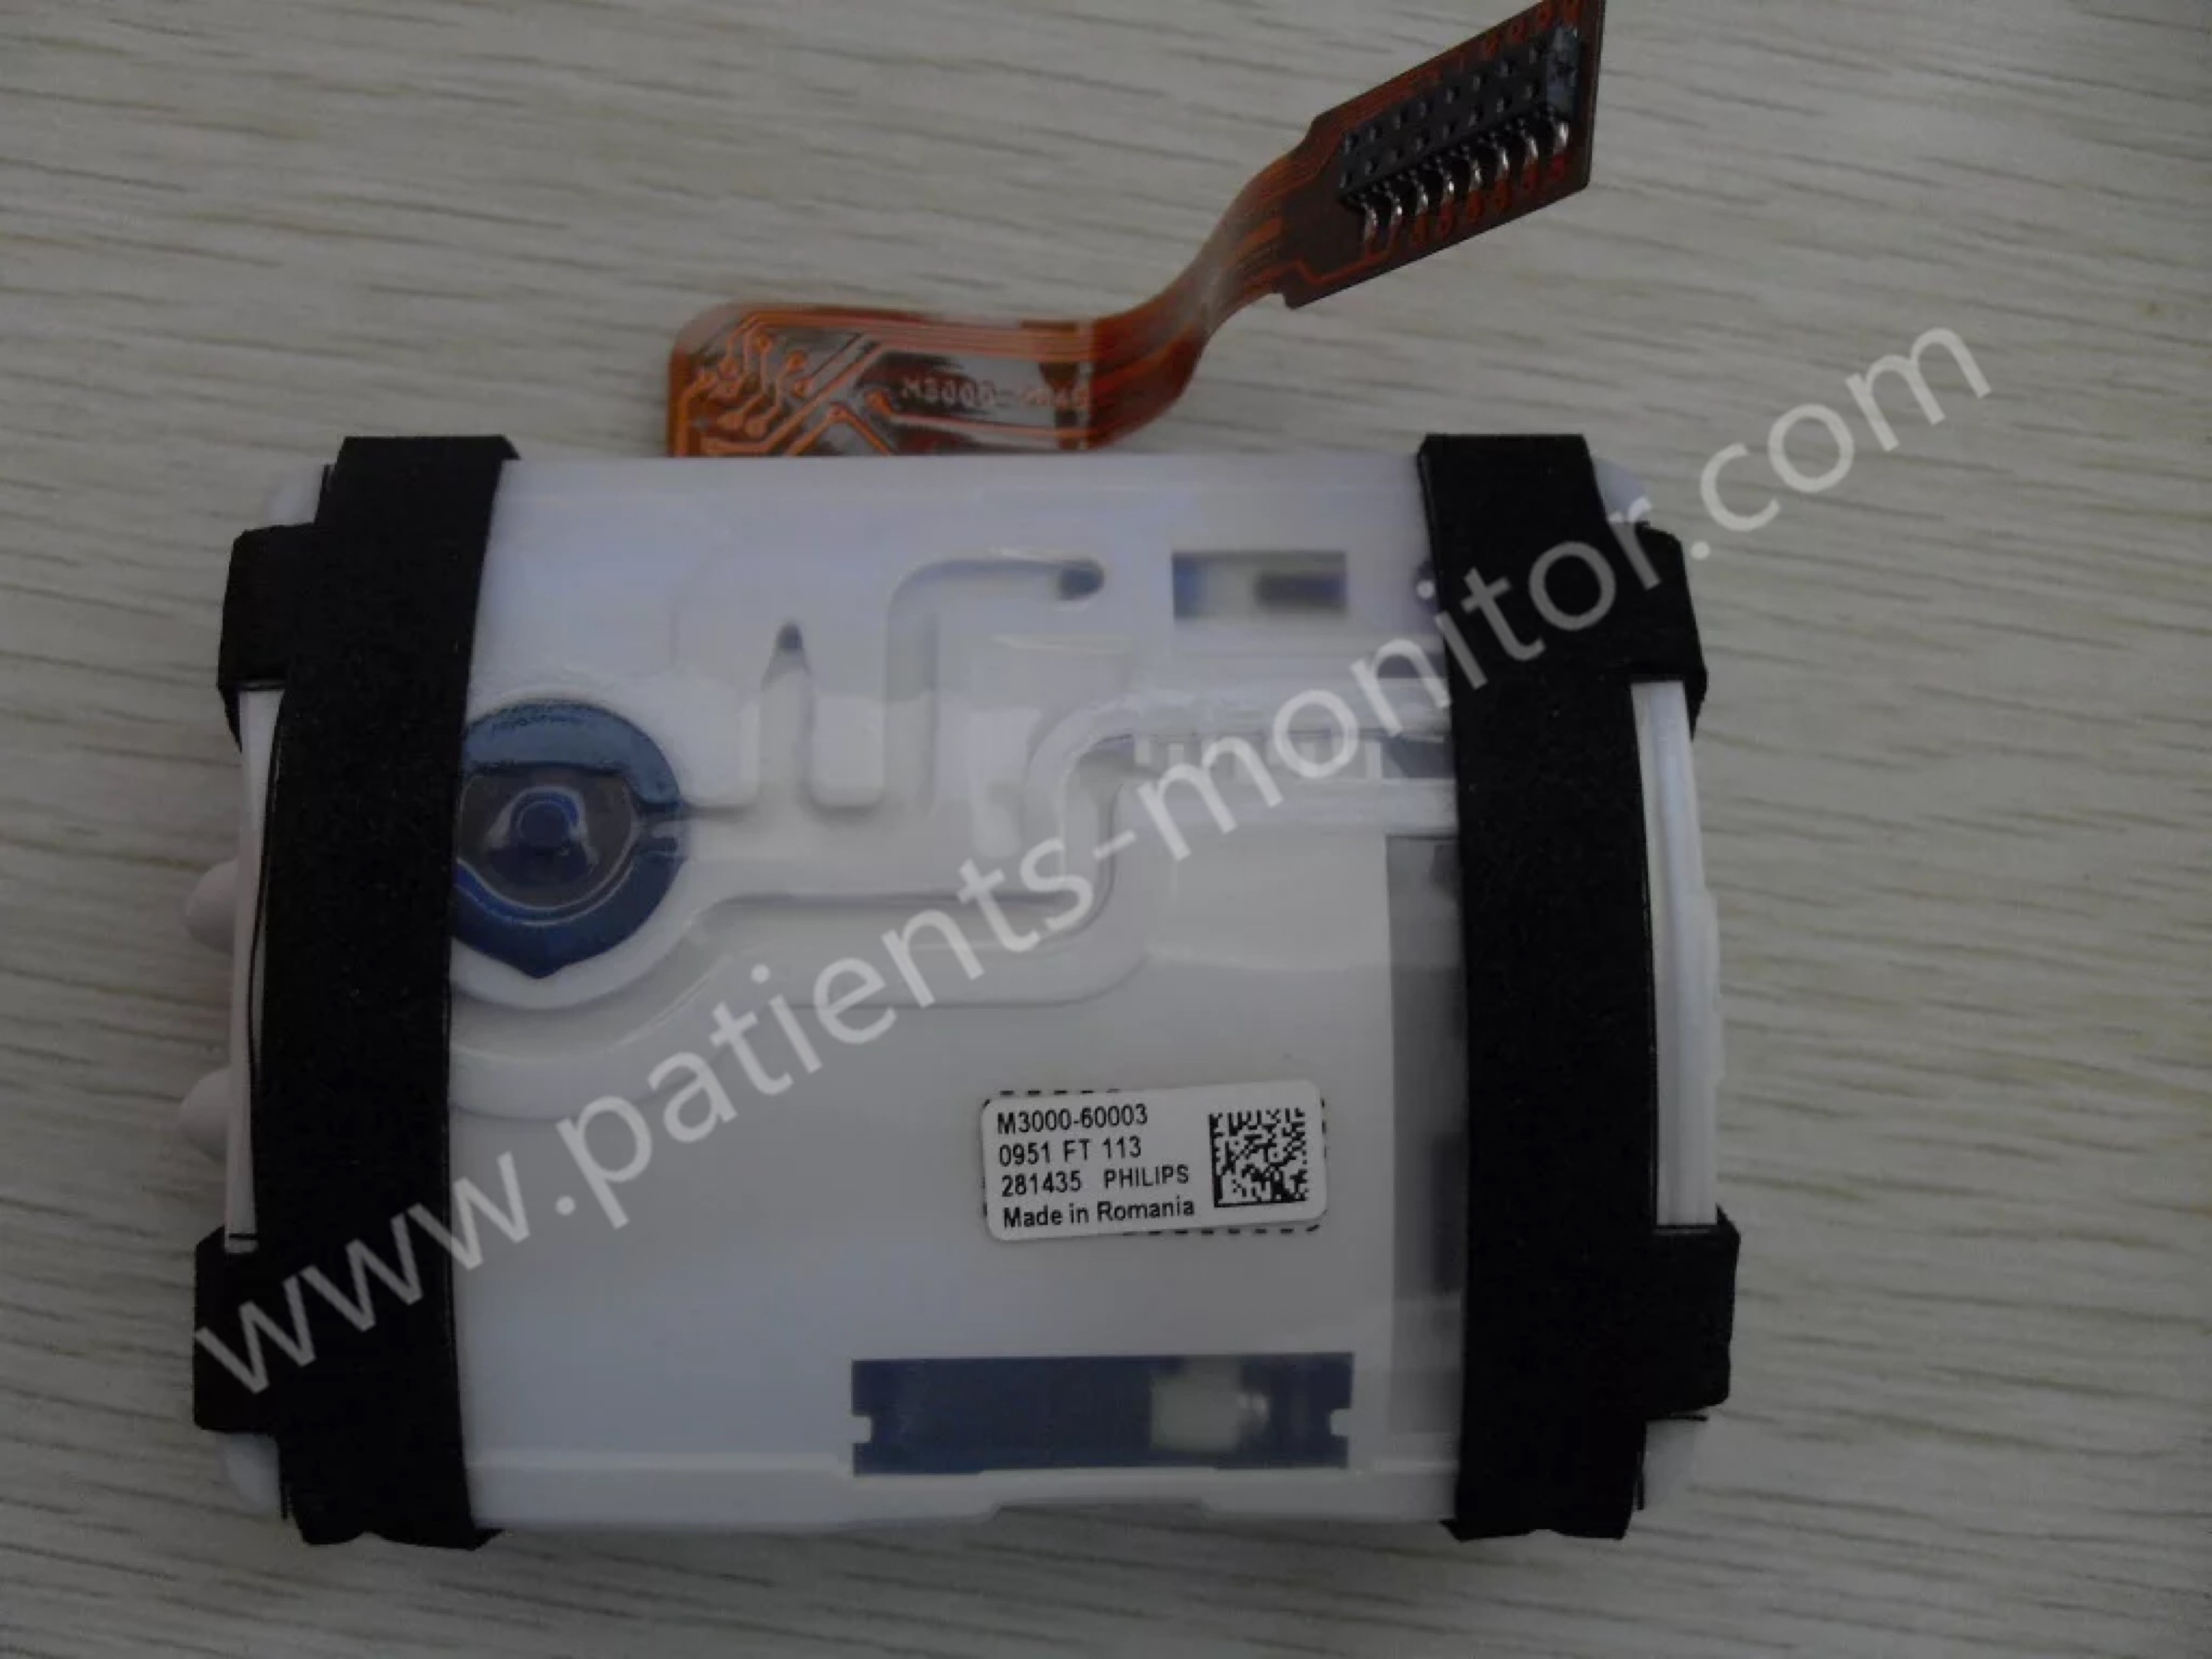 Pompa delle parti di riparazione del monitor paziente di philip MP20-MP70 dell'attrezzatura medica dall'ospedale M3000-60003